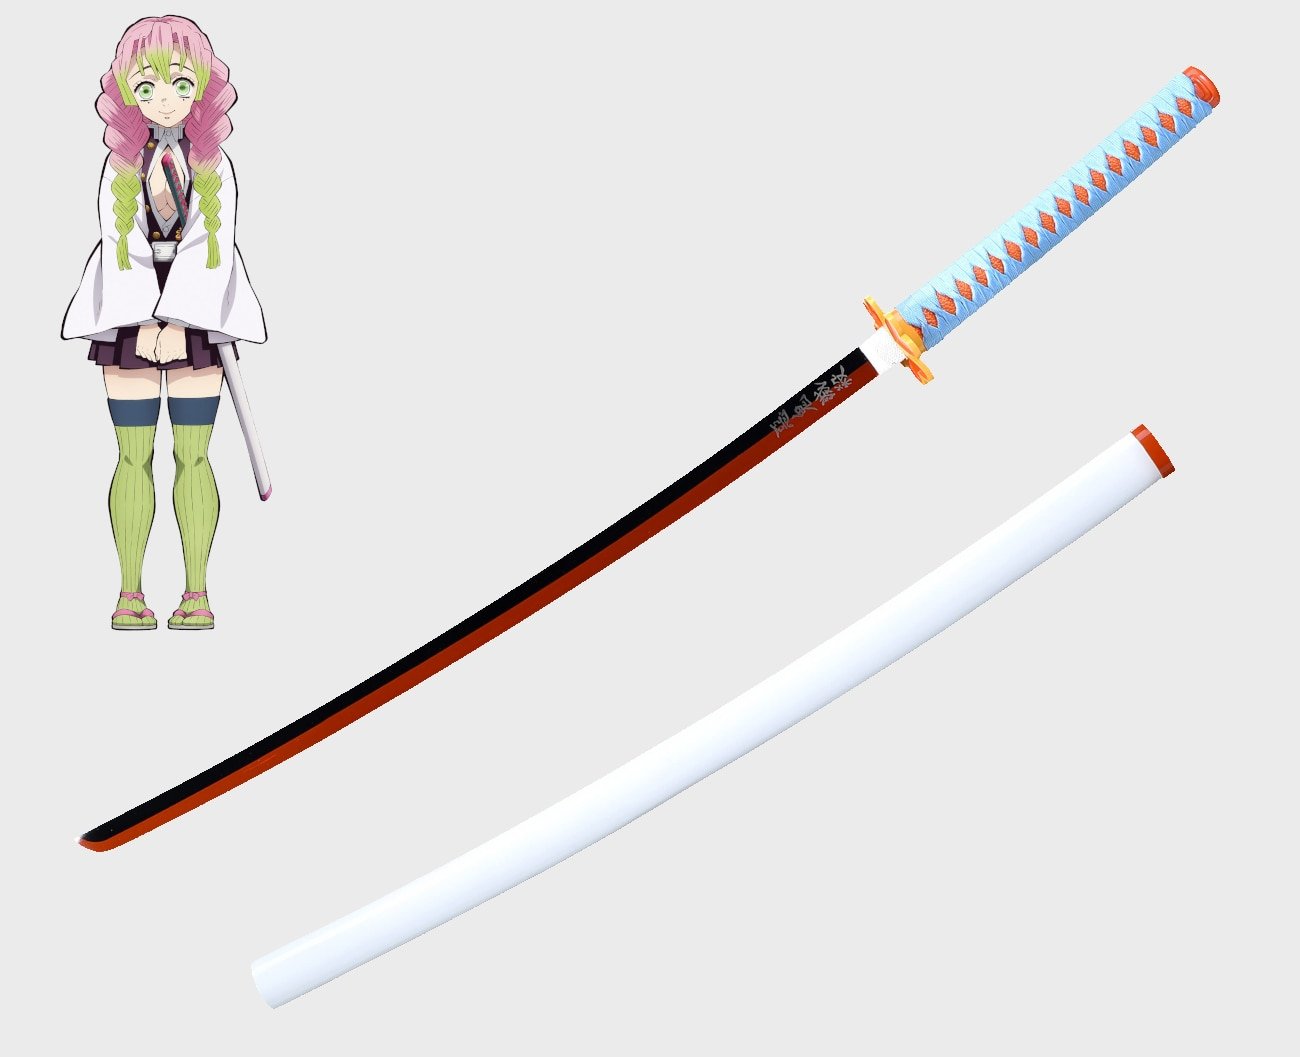 Tanjiro Kamado recebe sua espada (Nichirin) e ela muda de cor